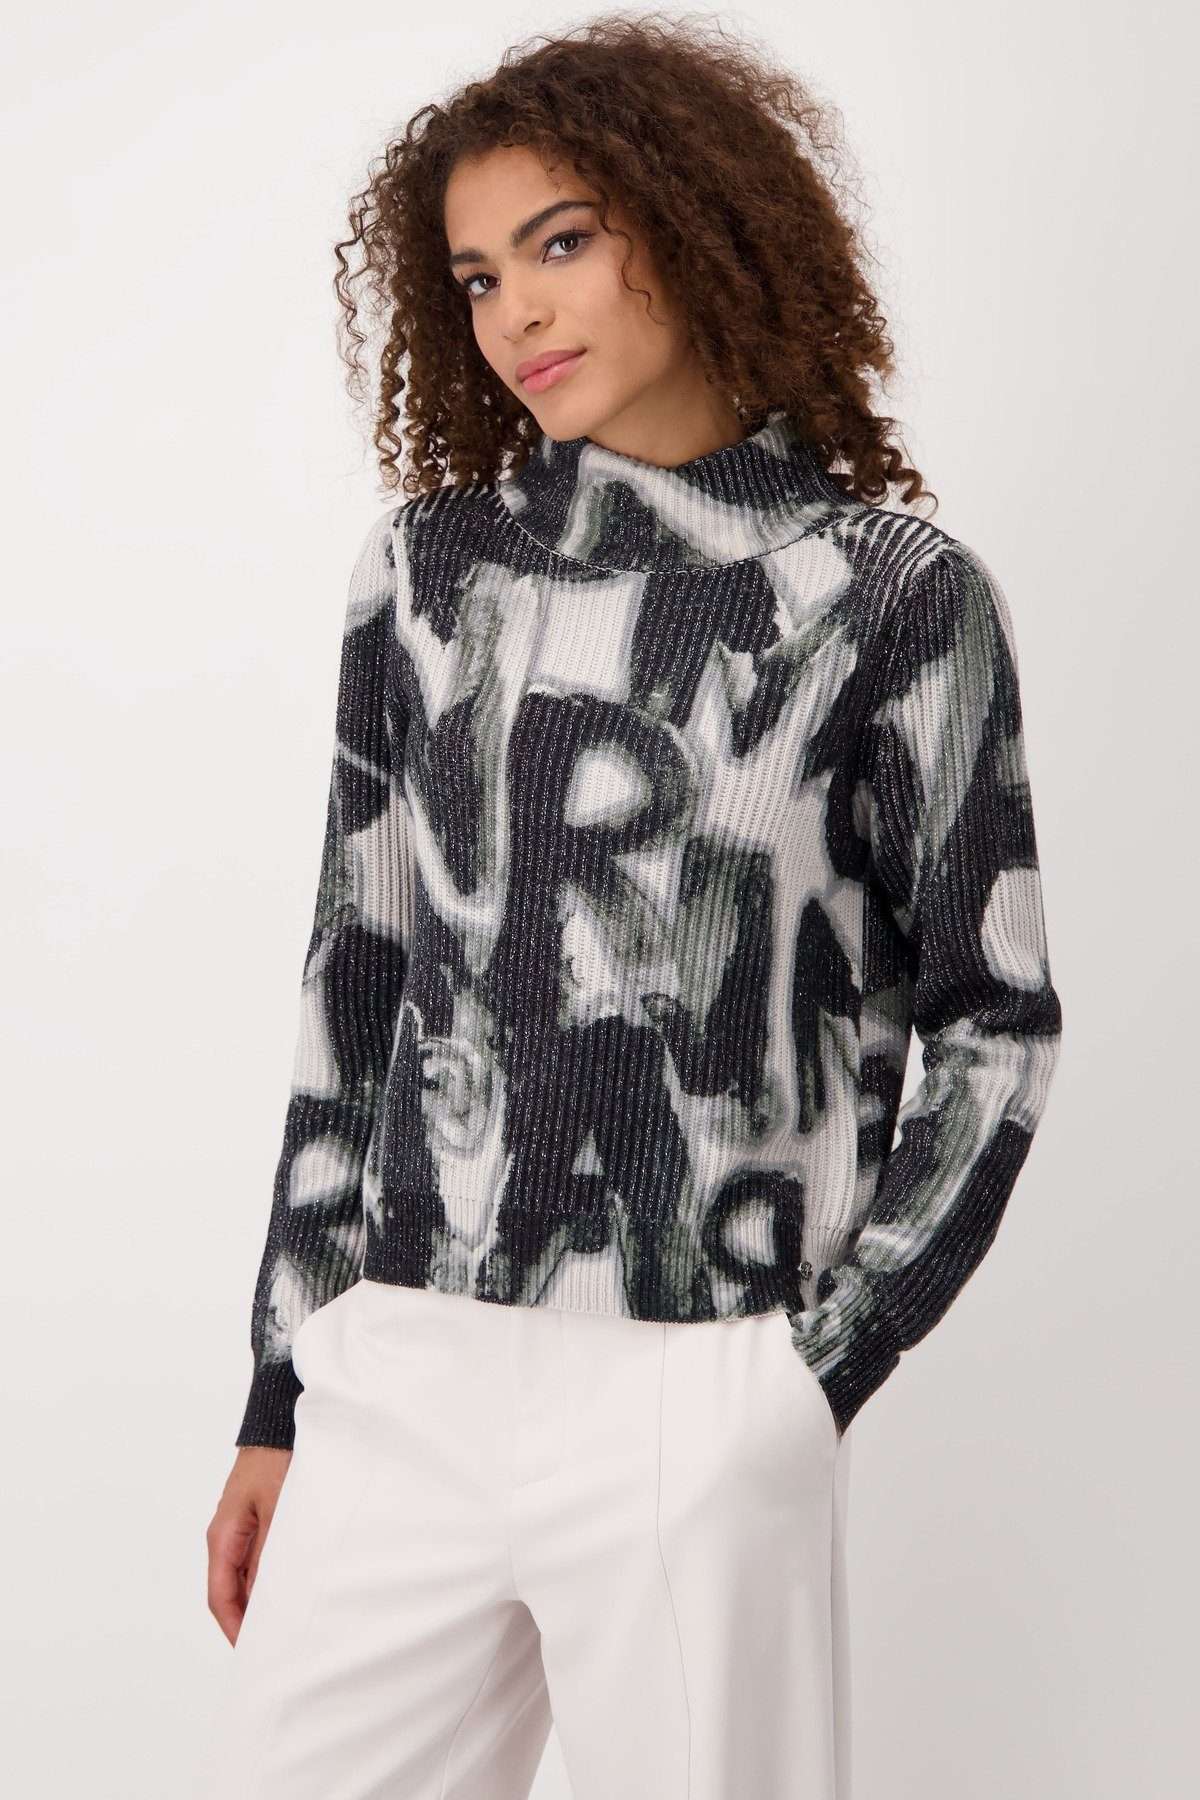 Вязаный свитер-пуловер с буквами в жемчужный узор